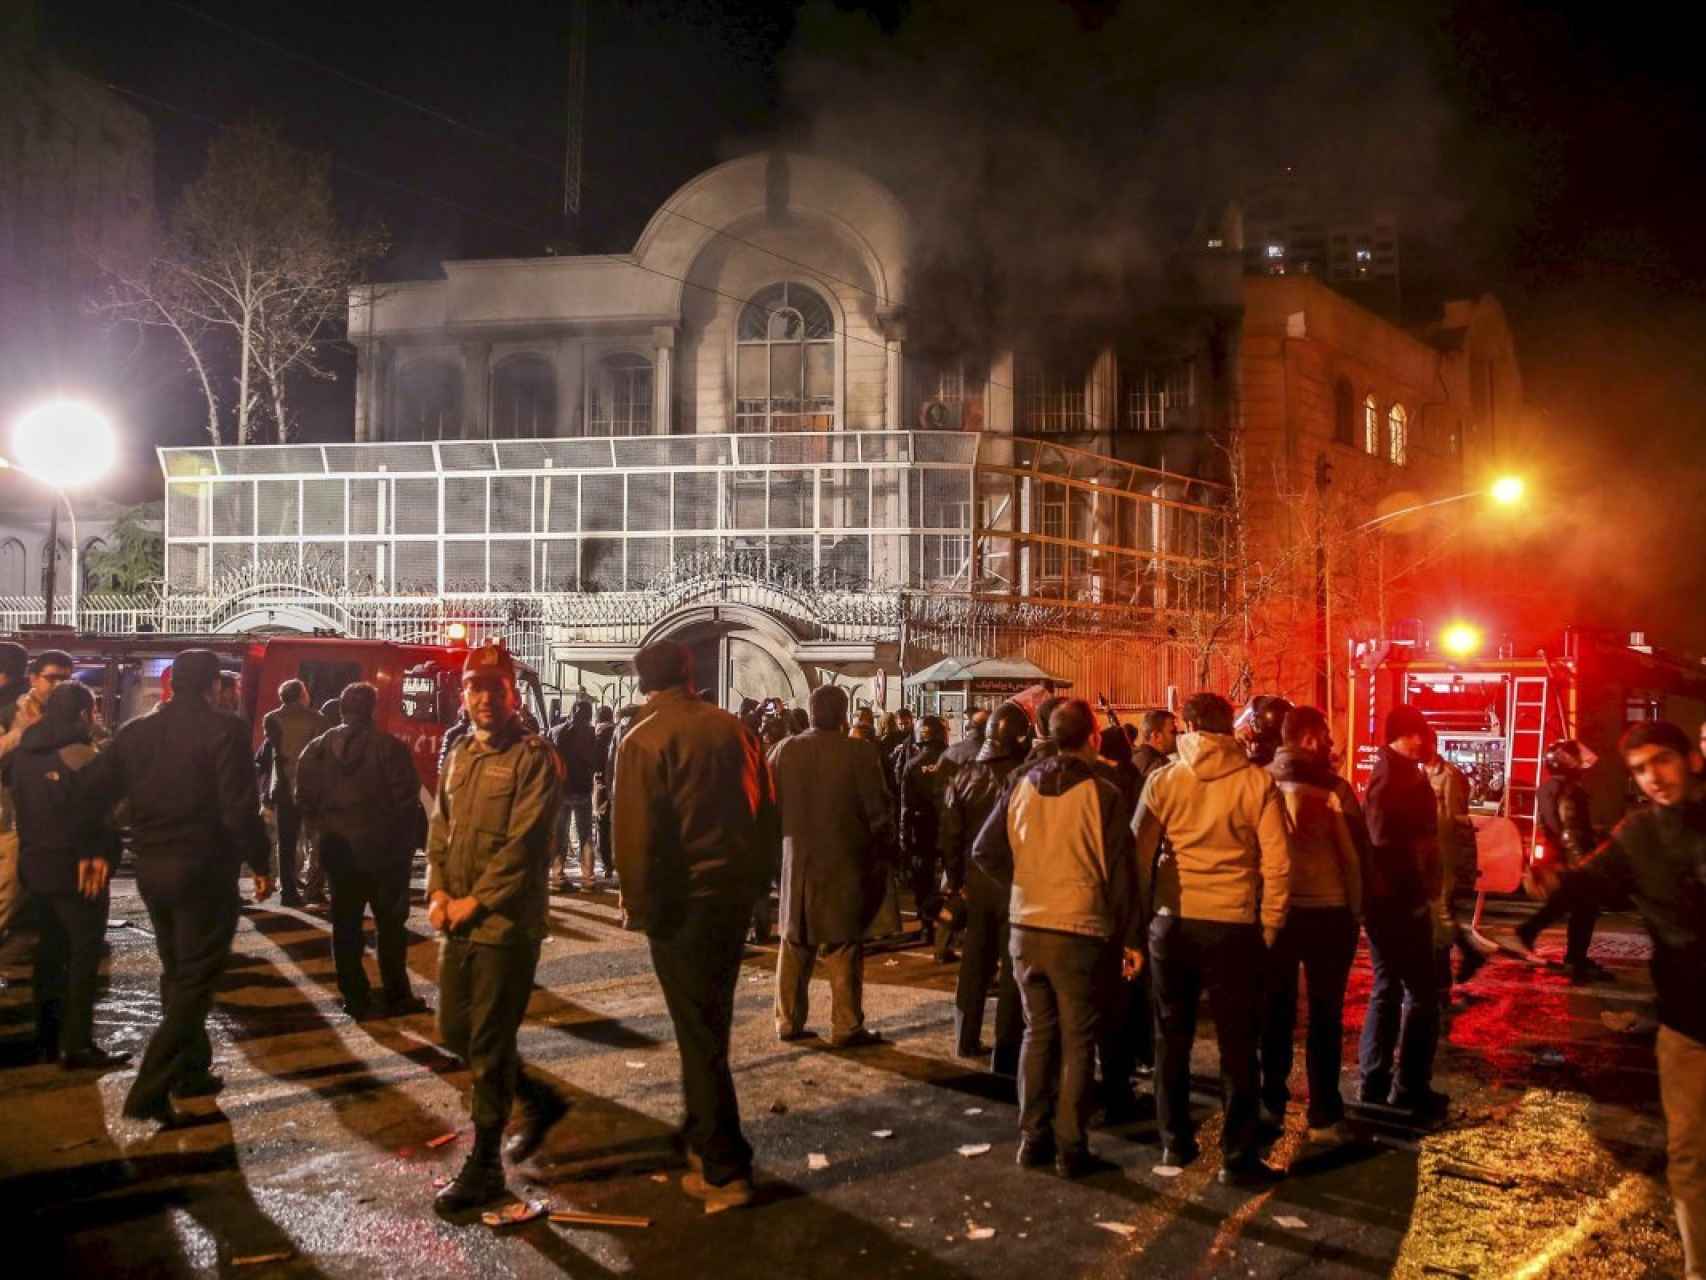 La embajada saudí en Teherán, envuelta en humo tras ser atacada por unos manifestantes.